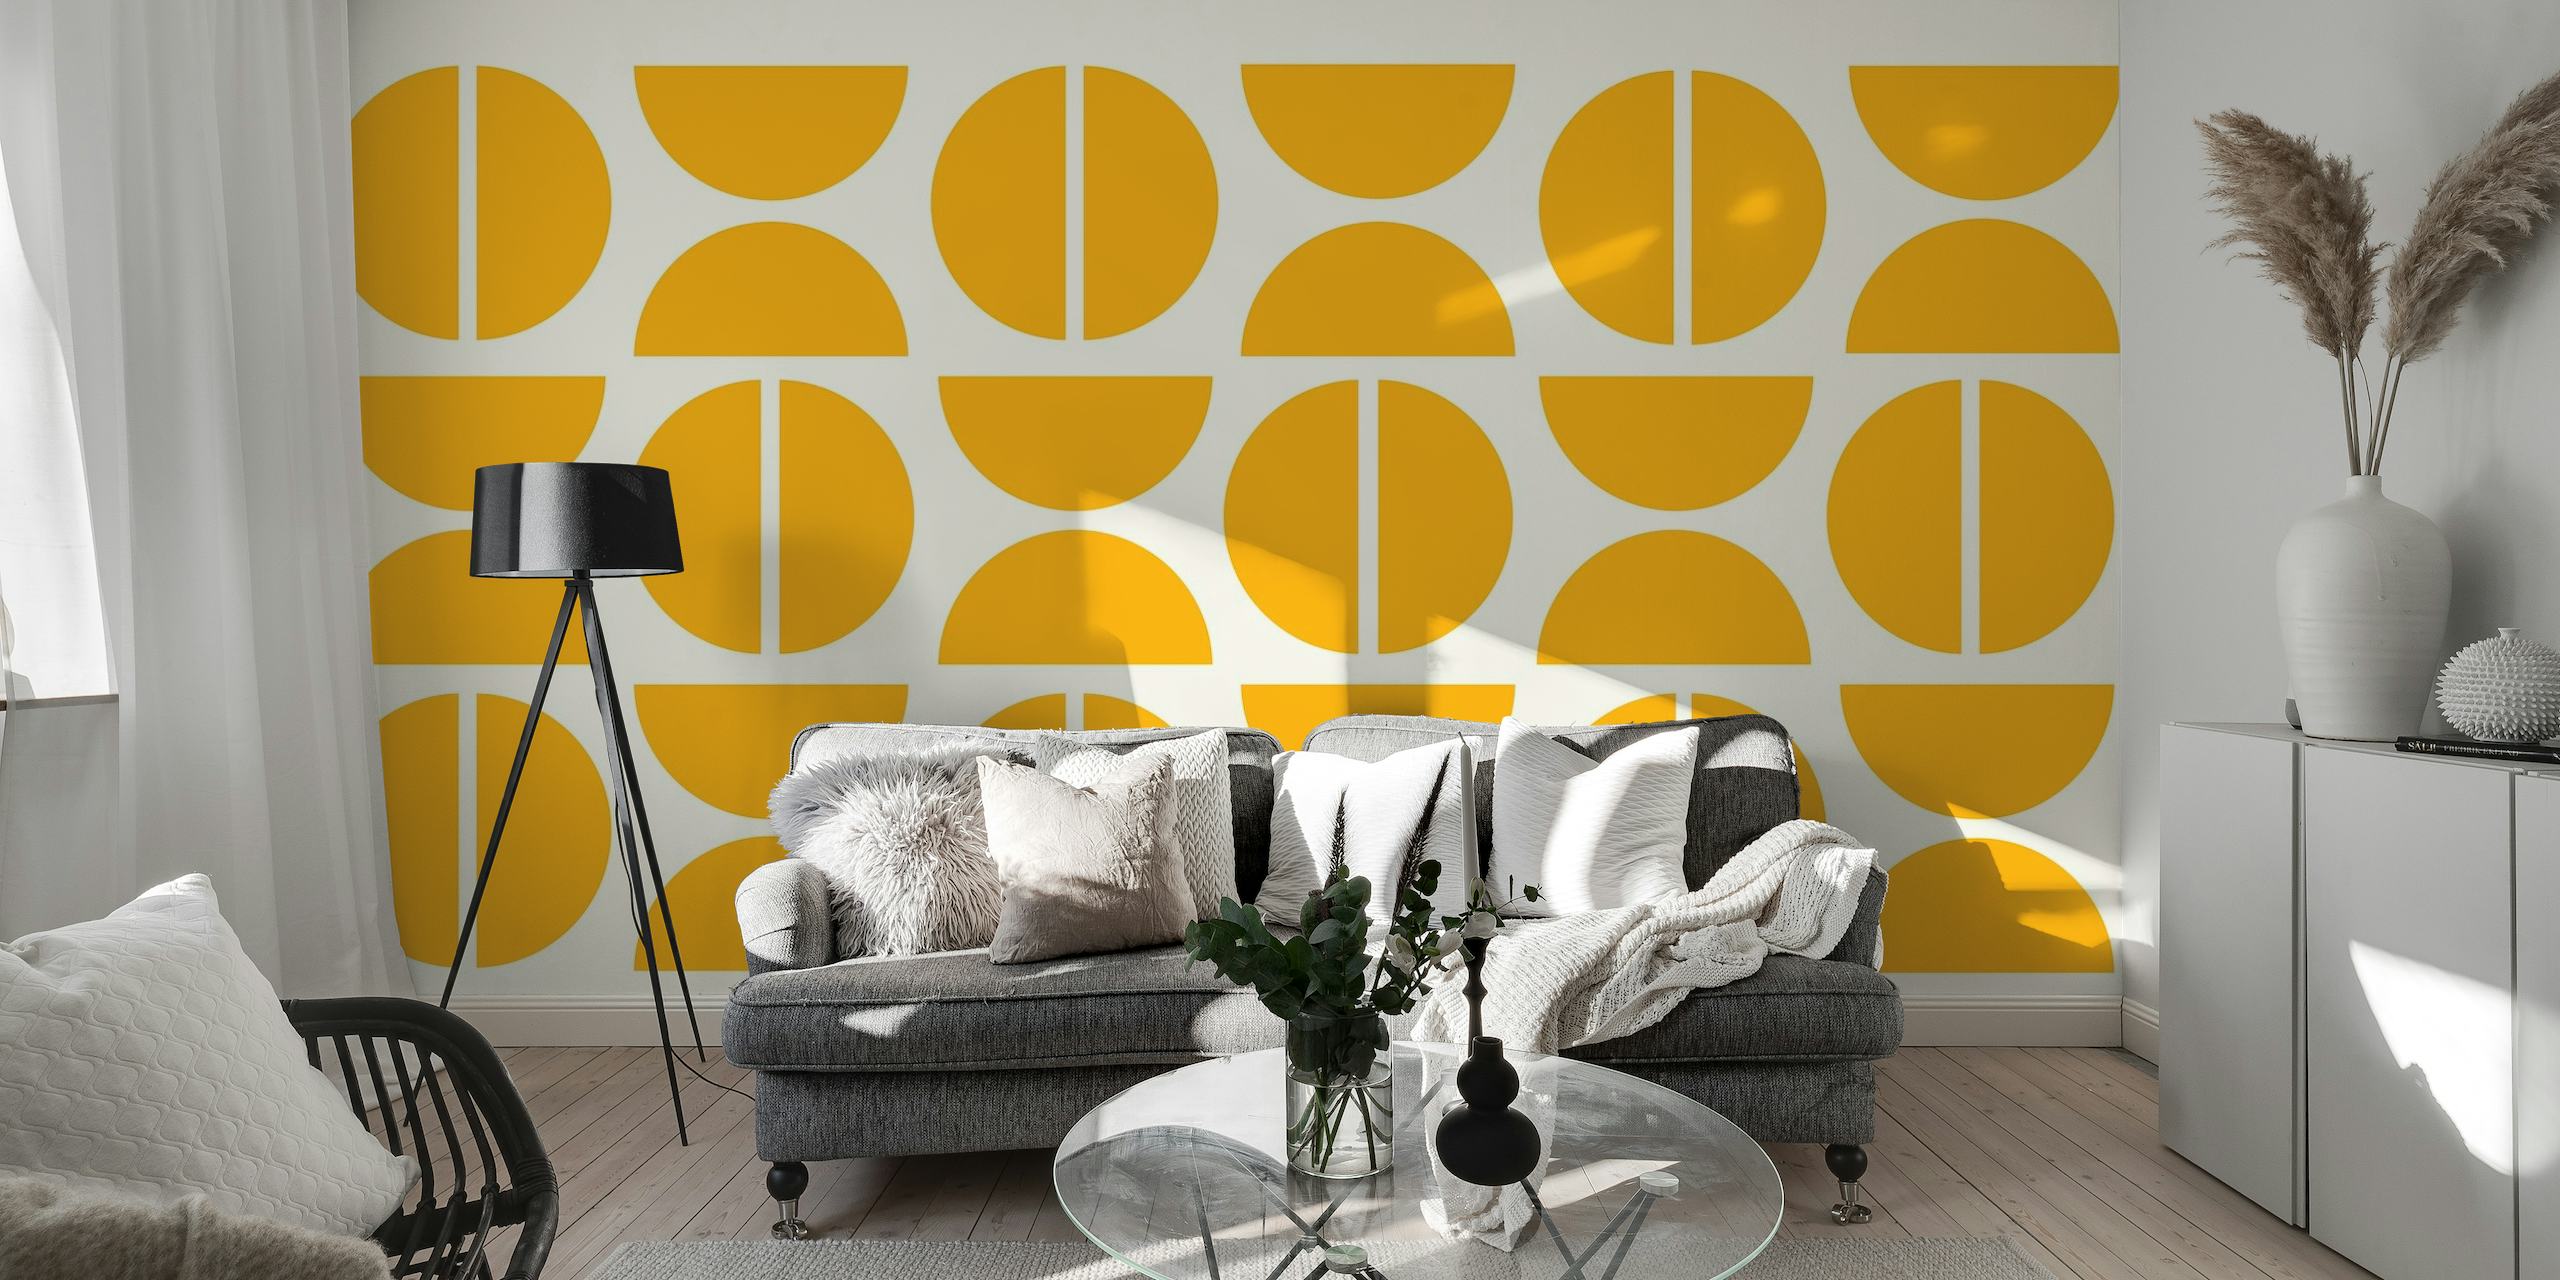 Papier peint mural à sticker géométrique du Bauhaus doré avec des cercles et des lignes